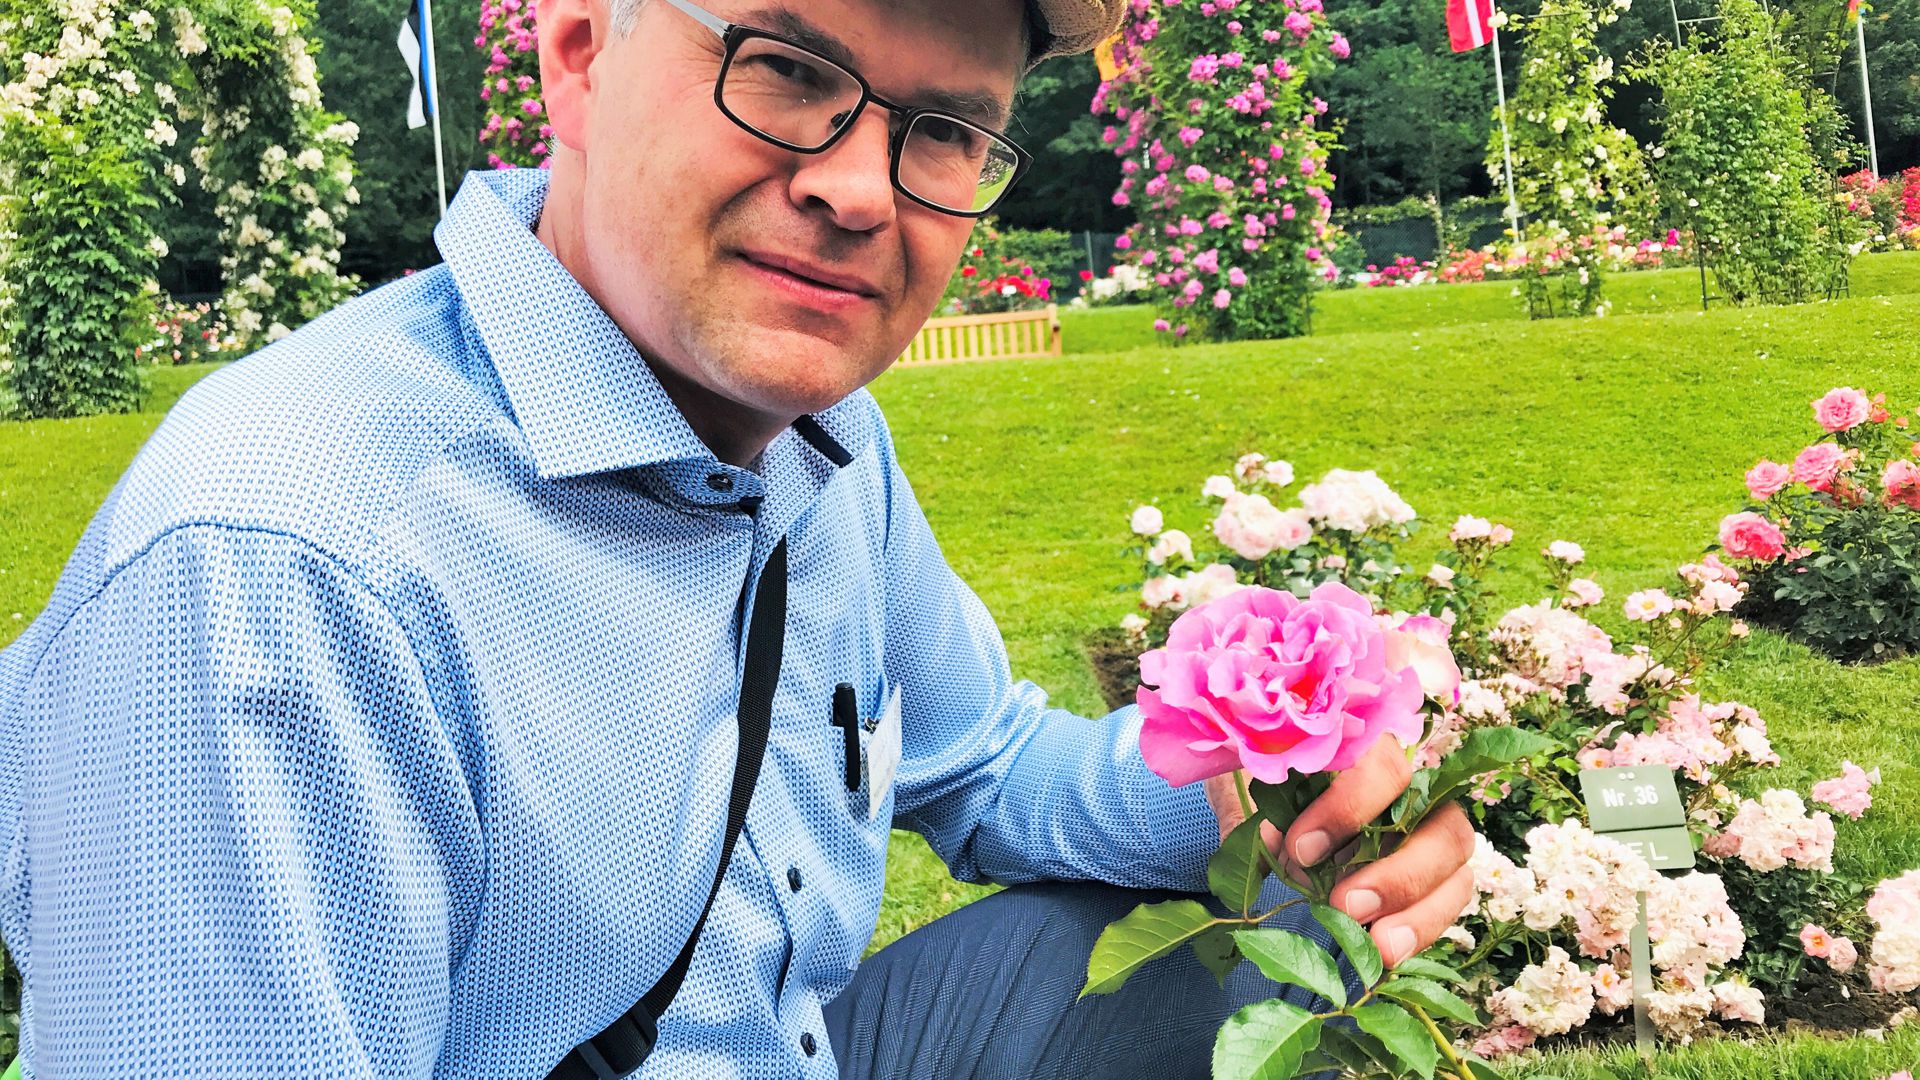 Markus Zeiler ist der Gartenchef der Blumeninsel Mainau im Bodensee. An der Tätigkeit als Jurymitglied des Internationalen Rosenneuheitenwettbewerbs in Baden-Baden schätzt er auch den Austausch mit anderen Rosenexperten. 